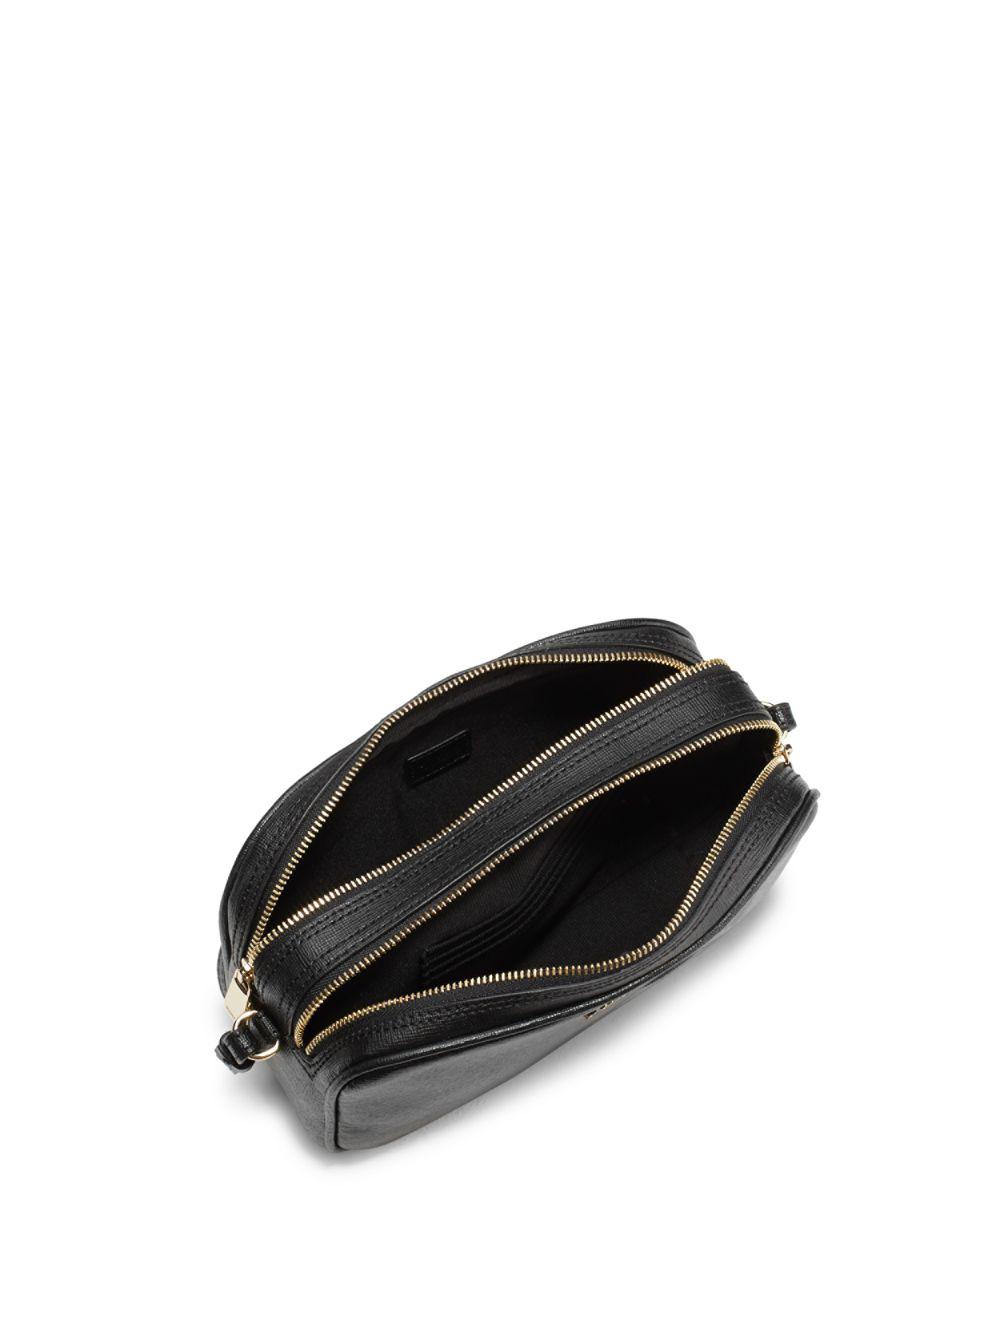 Furla Leather Lilli Xl Crossbody Bag in Onyx (Black) | Lyst